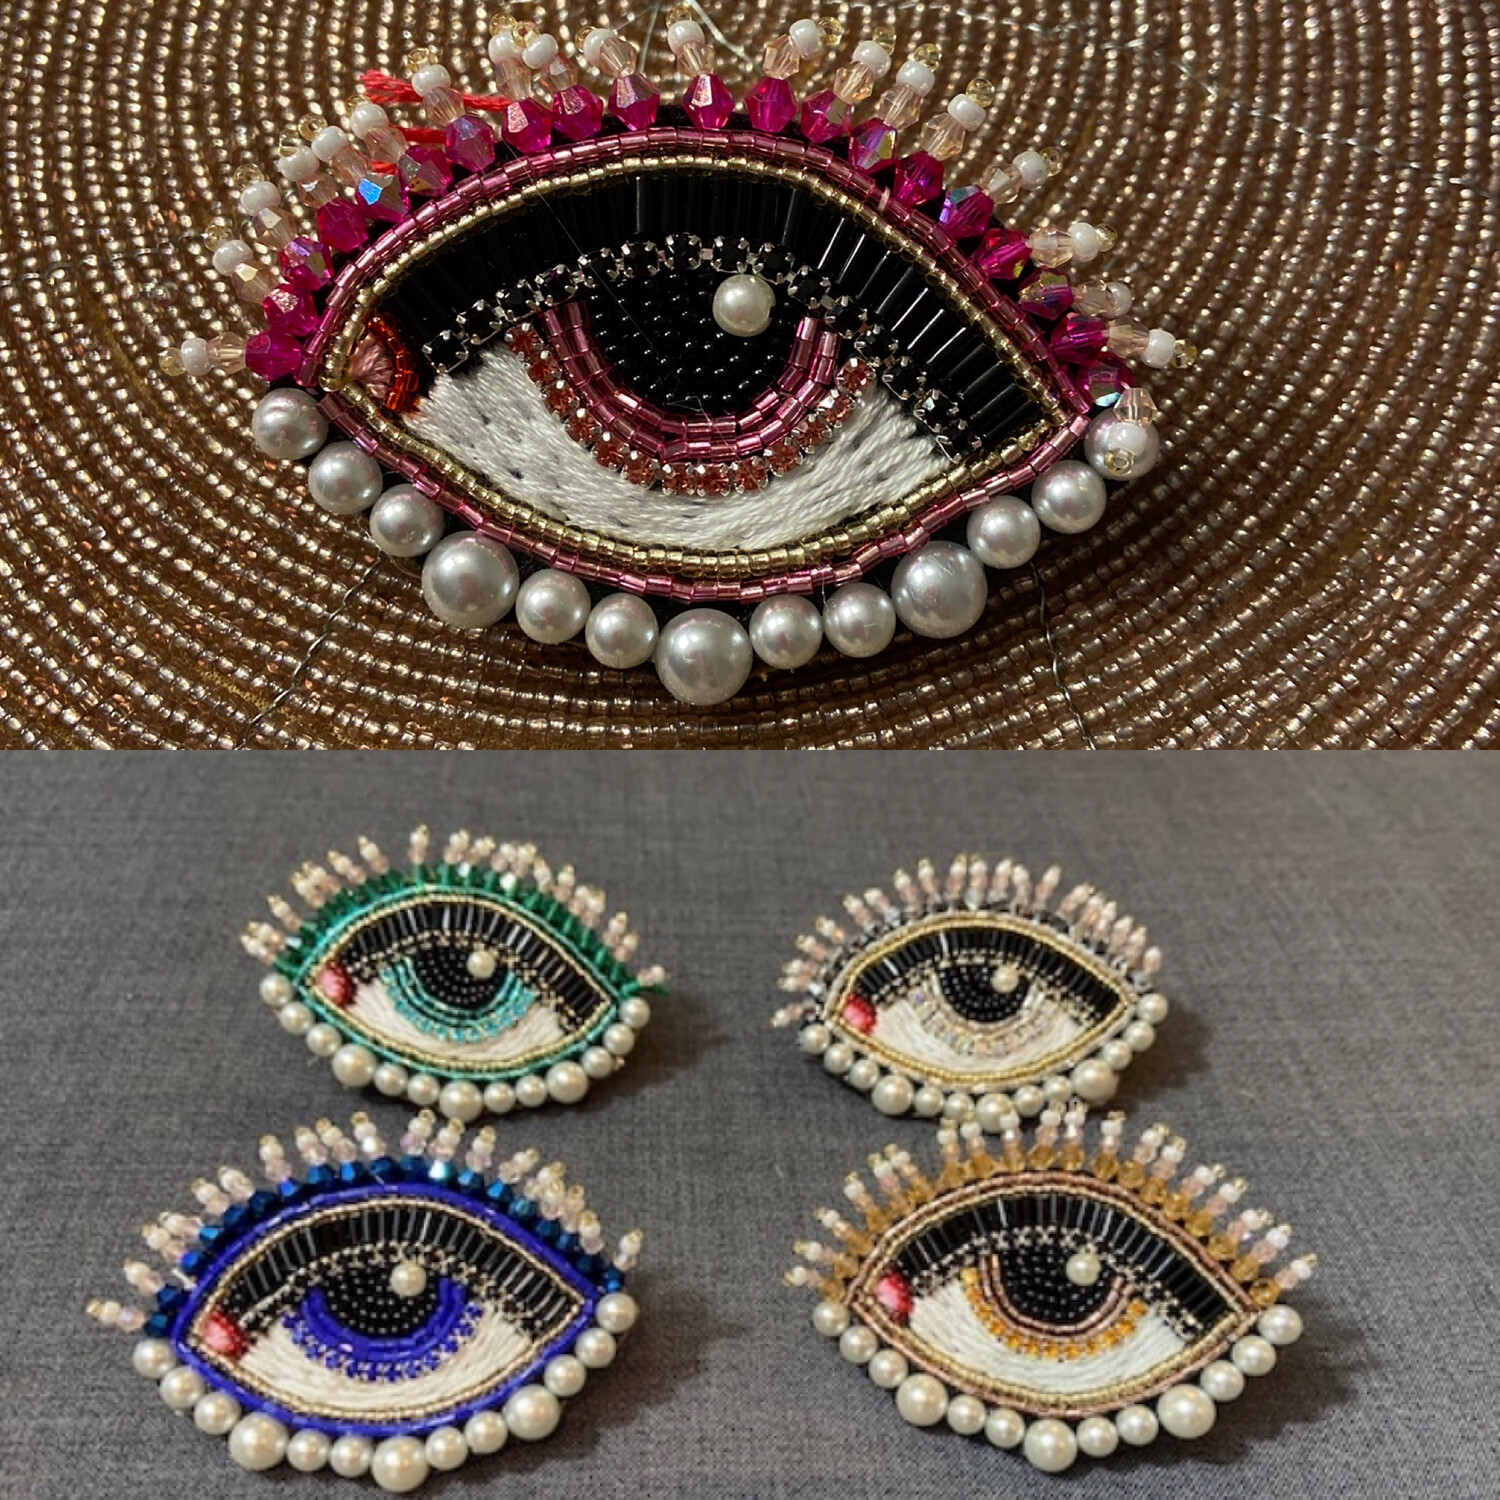 Augen Brosche mit Perlen bestickt, verschiedene Farben